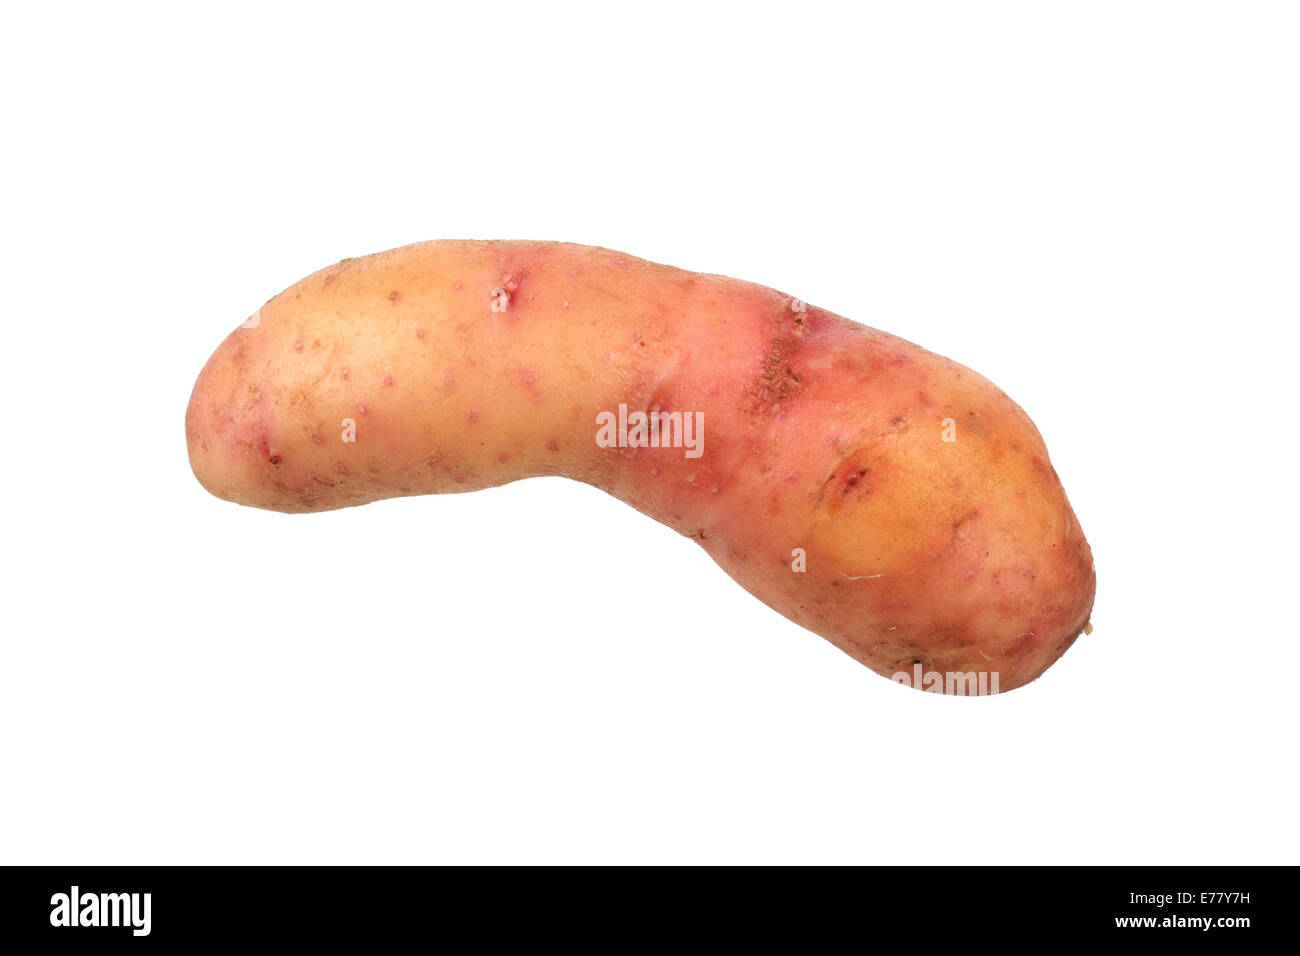 Potato, 'Bamberger Hörnchen' variety Stock Photo